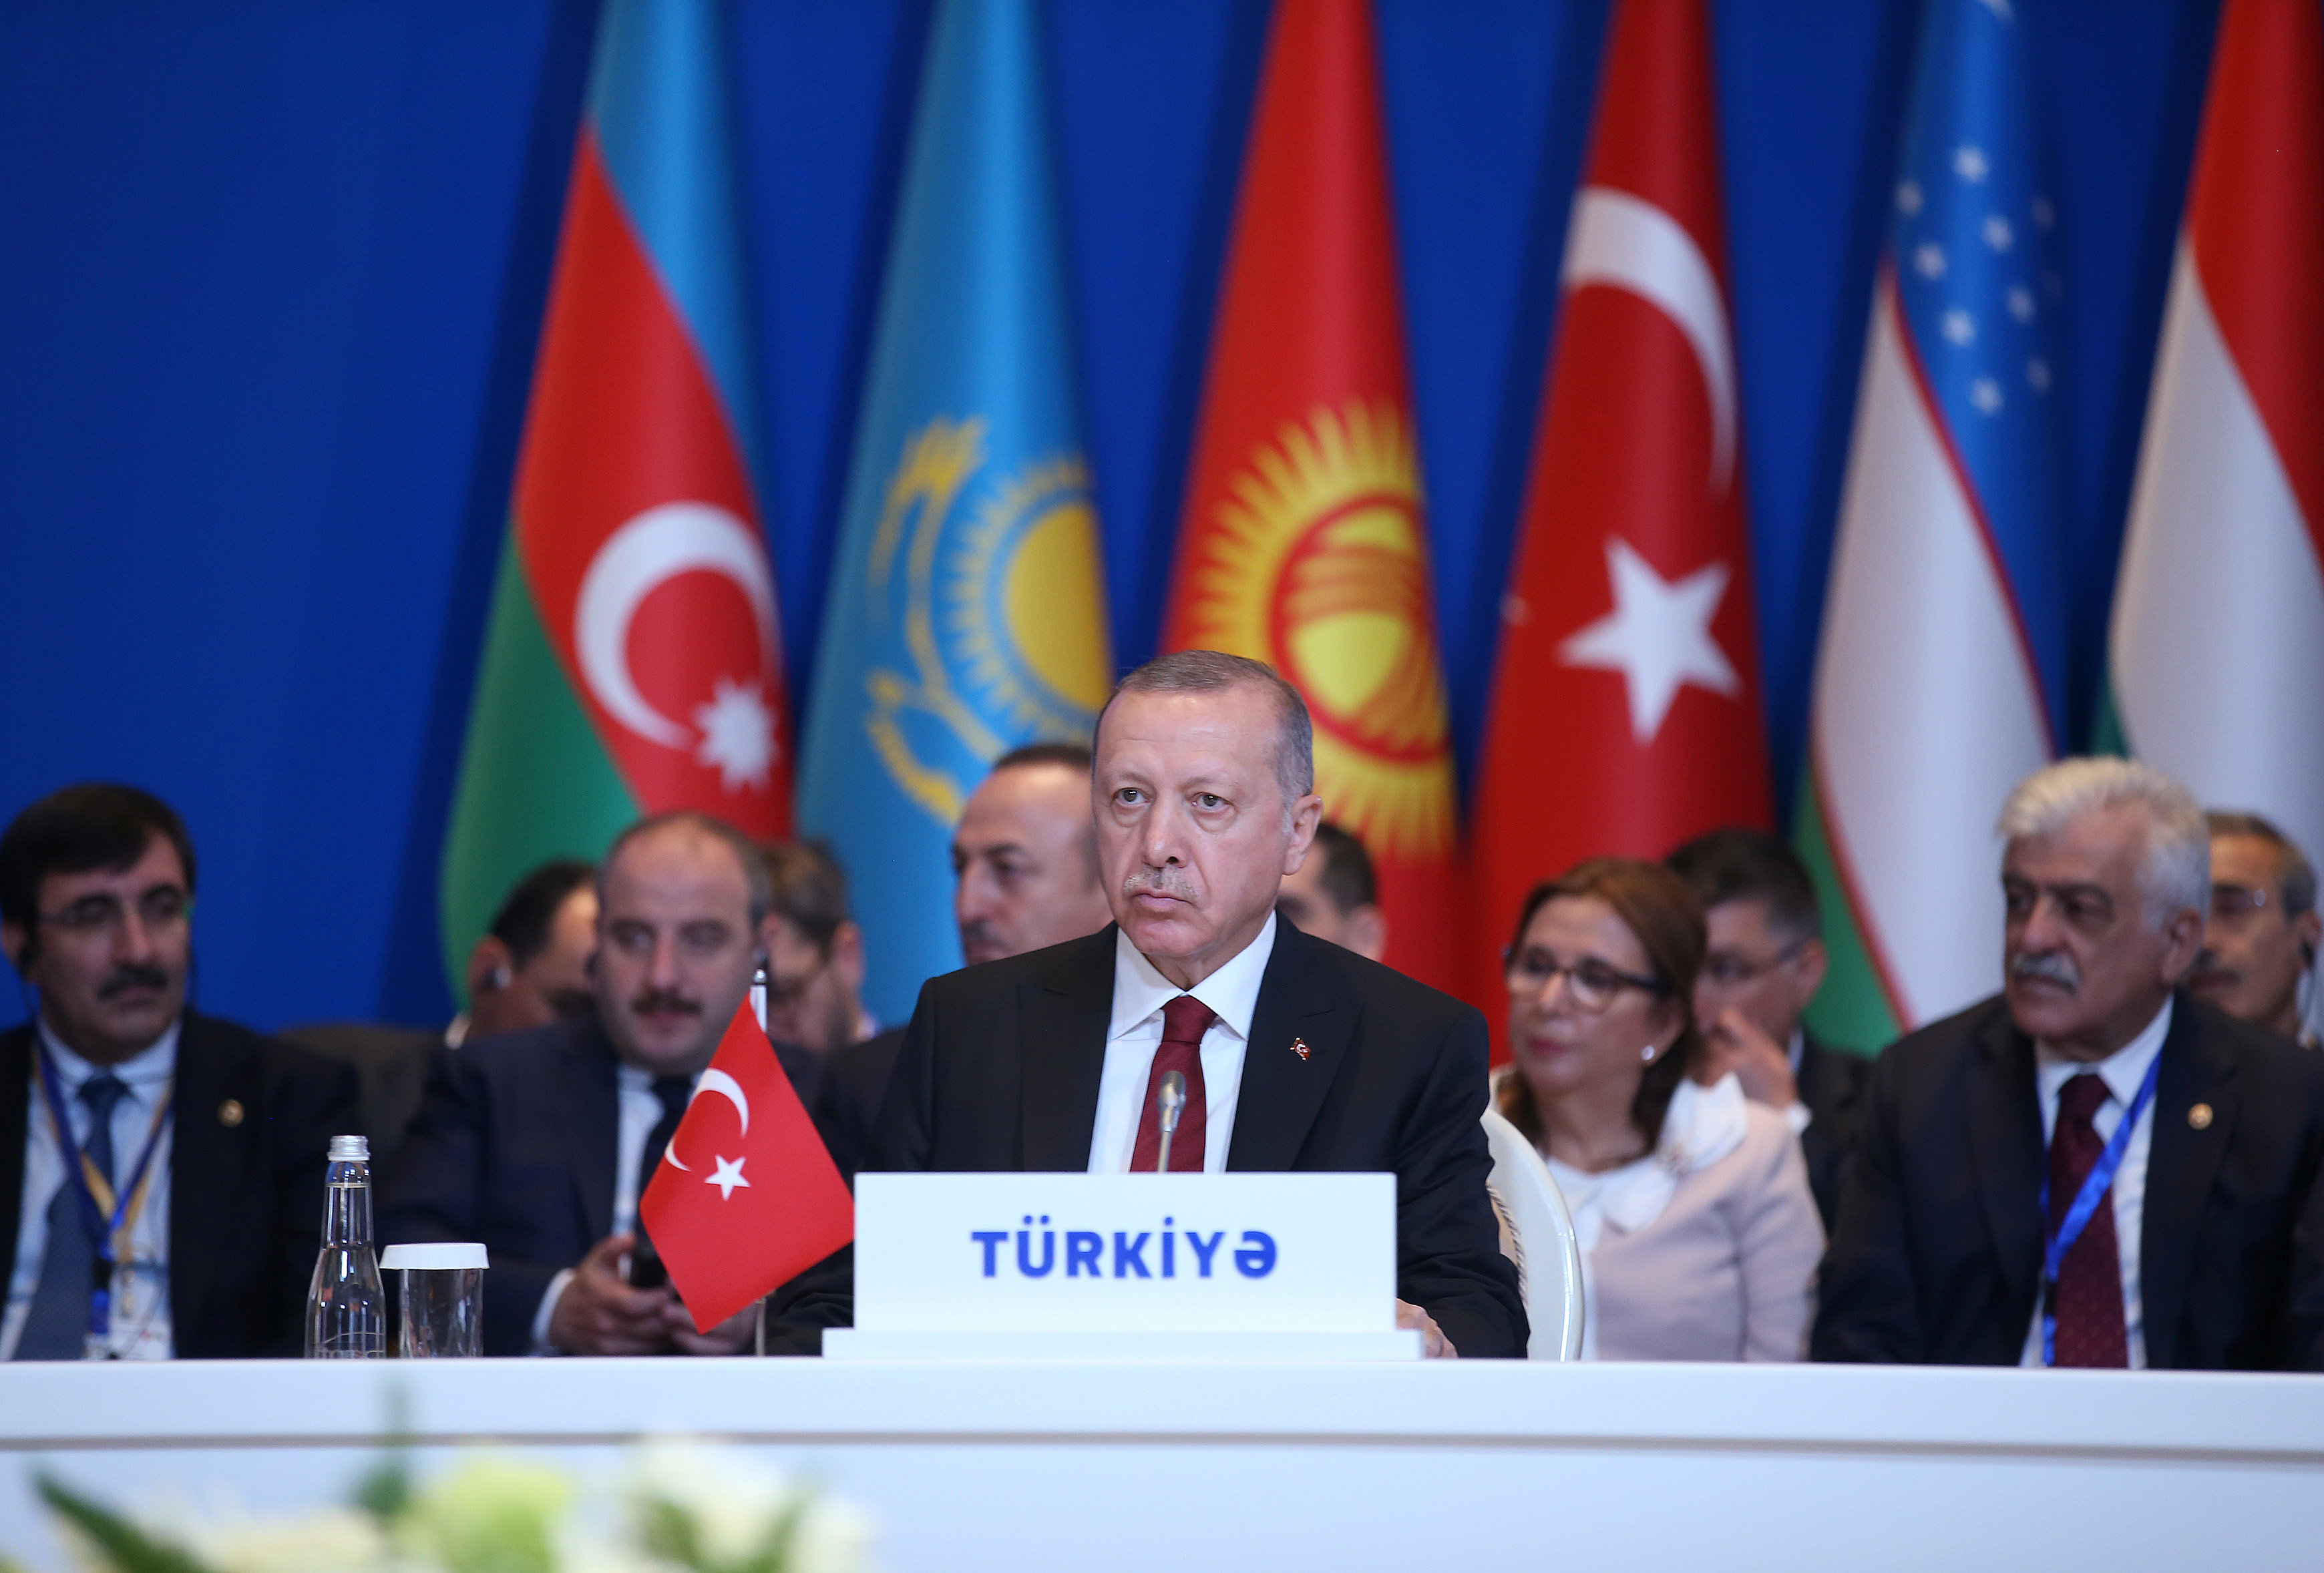 Erdogan descarta cualquier negociación con las fuerzas kurdas en Siria